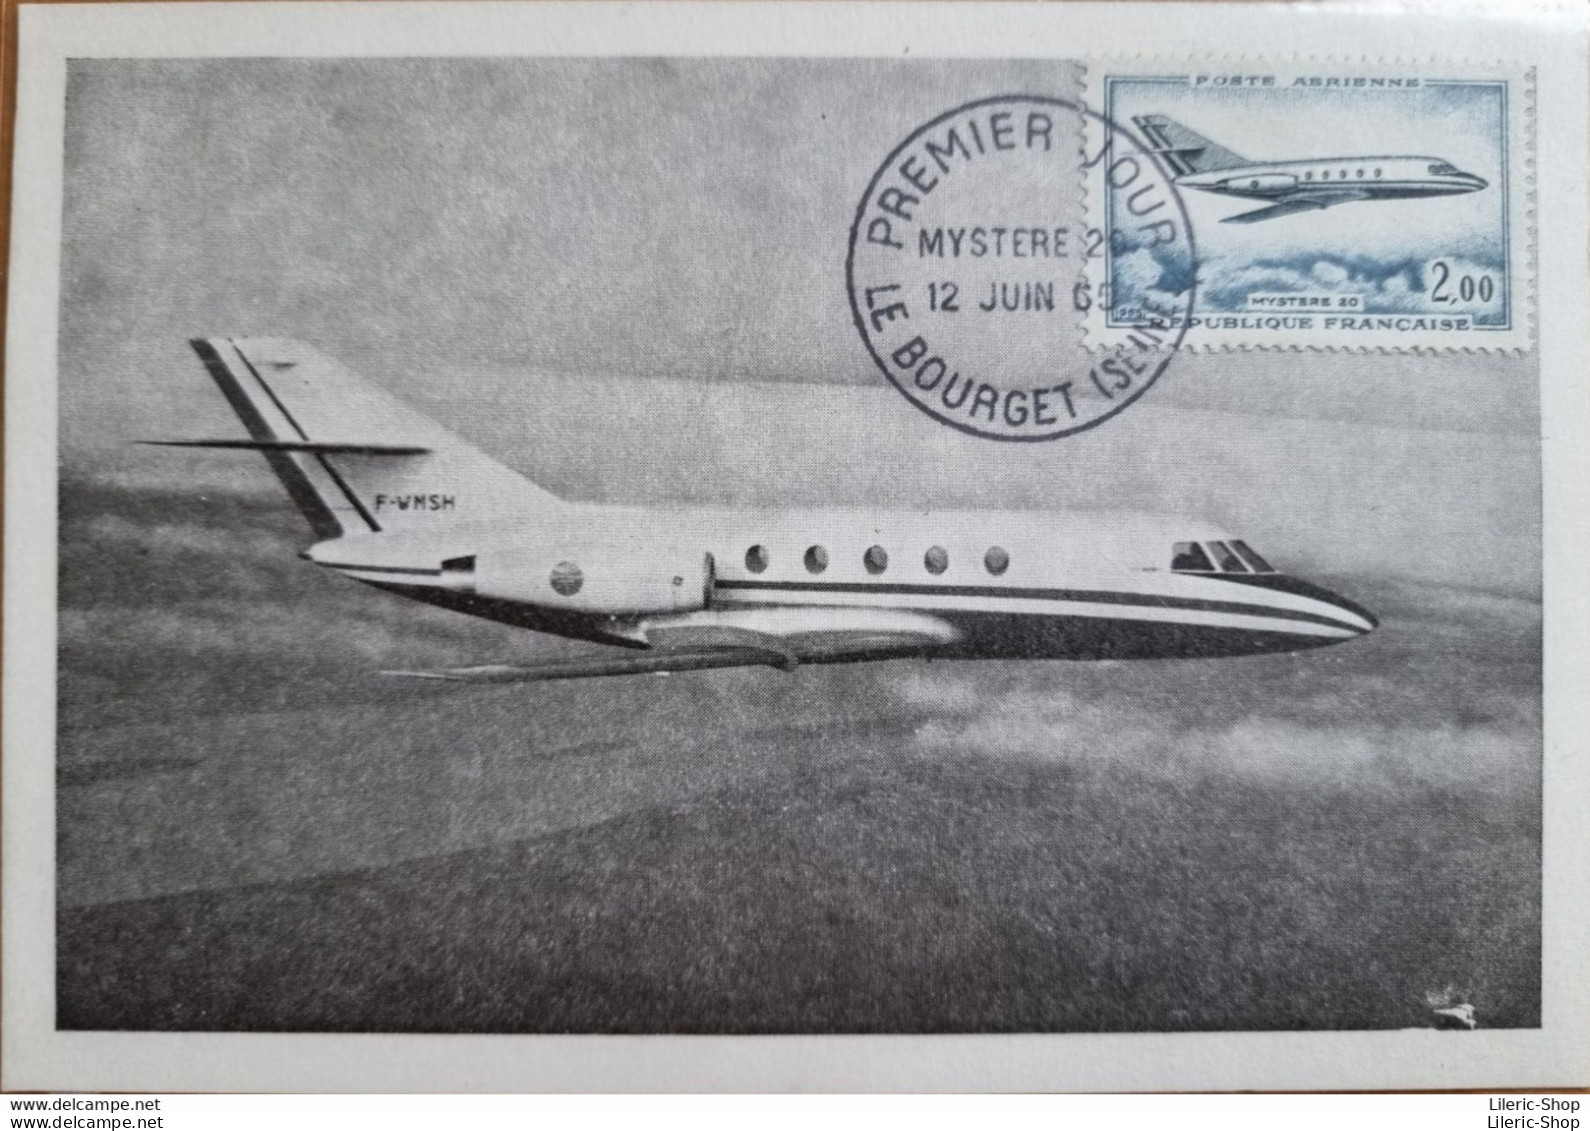 CARTE POSTALE PREMIER JOUR 12 06 1965 G.A.M. DASSAULT - Sud Aviation - "Mystère 20" Fan Jet Facon - - 1946-....: Ere Moderne